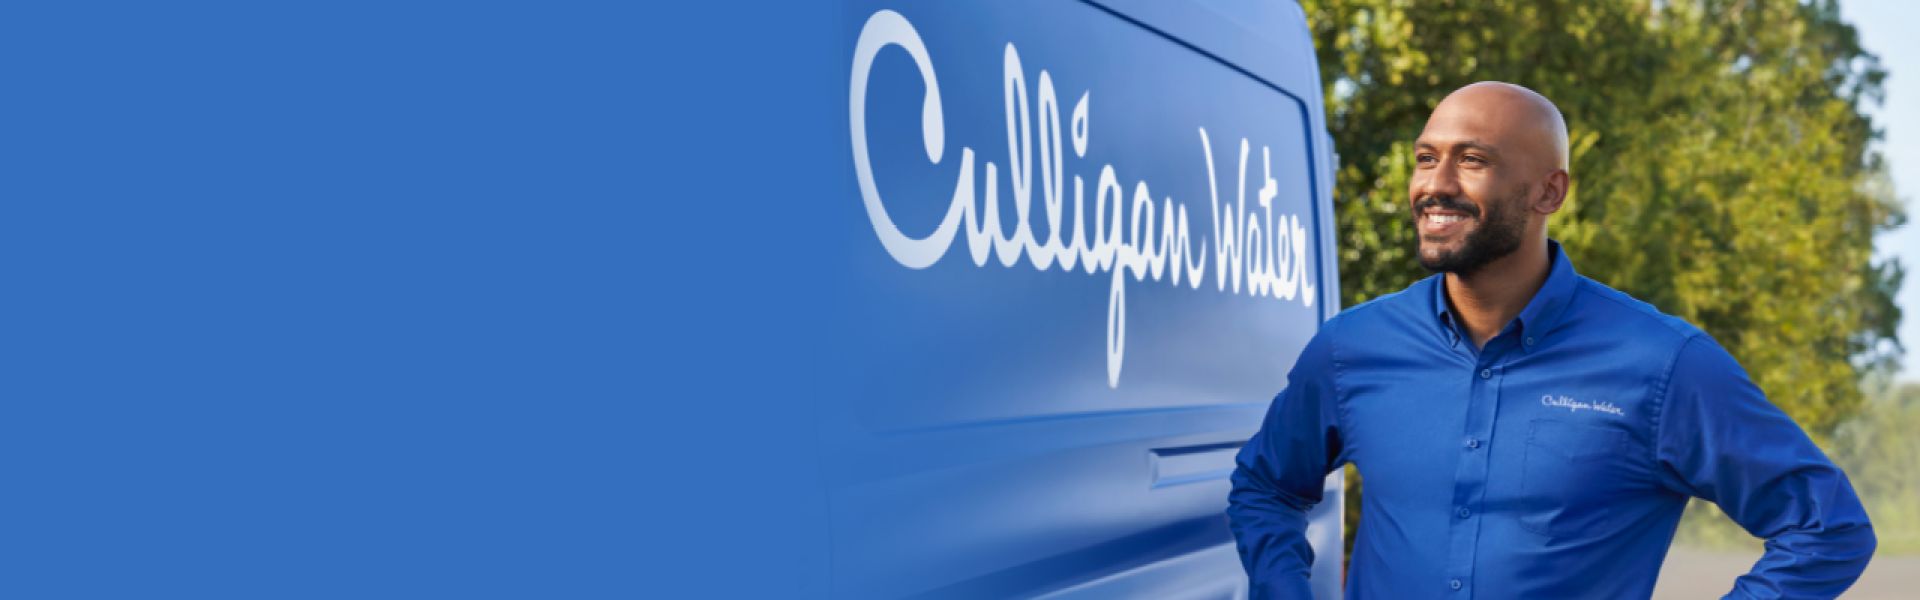 commercial culligan expert with culligan van